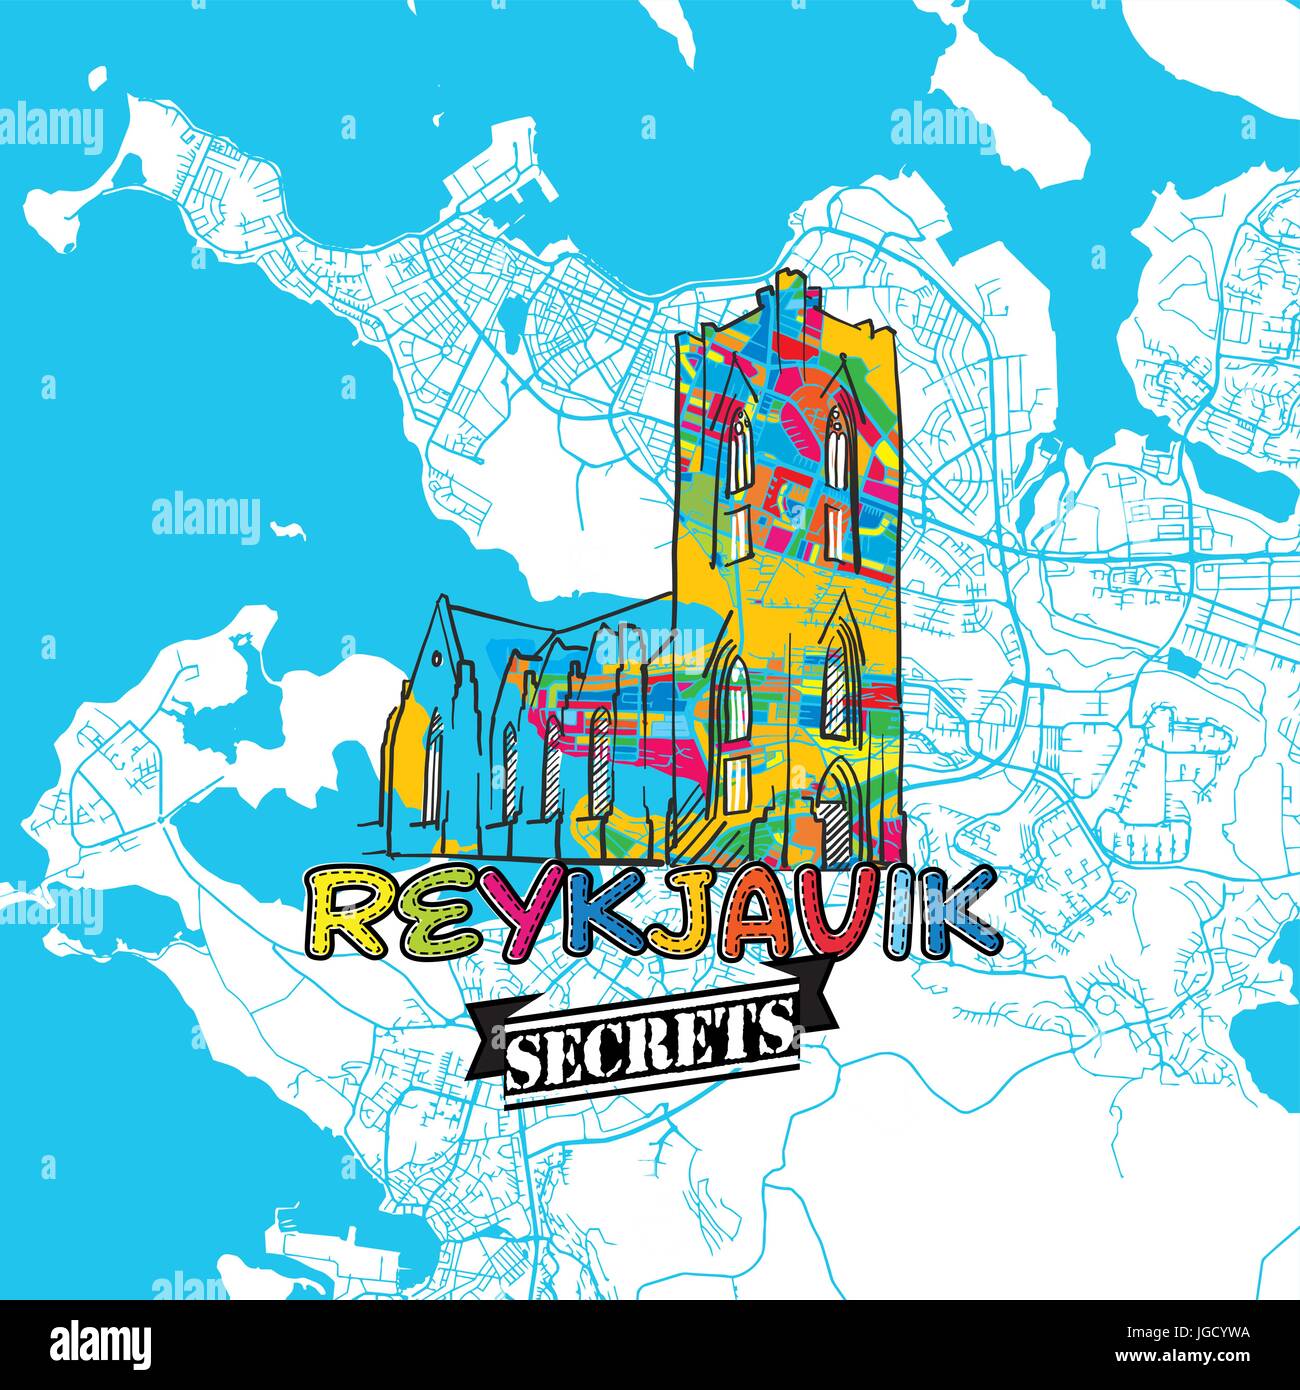 Reykjavik Reisen Geheimnisse Art Map für die Zuordnung von Experten und Reiseführer. Handgemachte Stadt Logo, Typo-Abzeichen und Hand gezeichnete Vektorbild auf Top sind gruppiert Stock Vektor